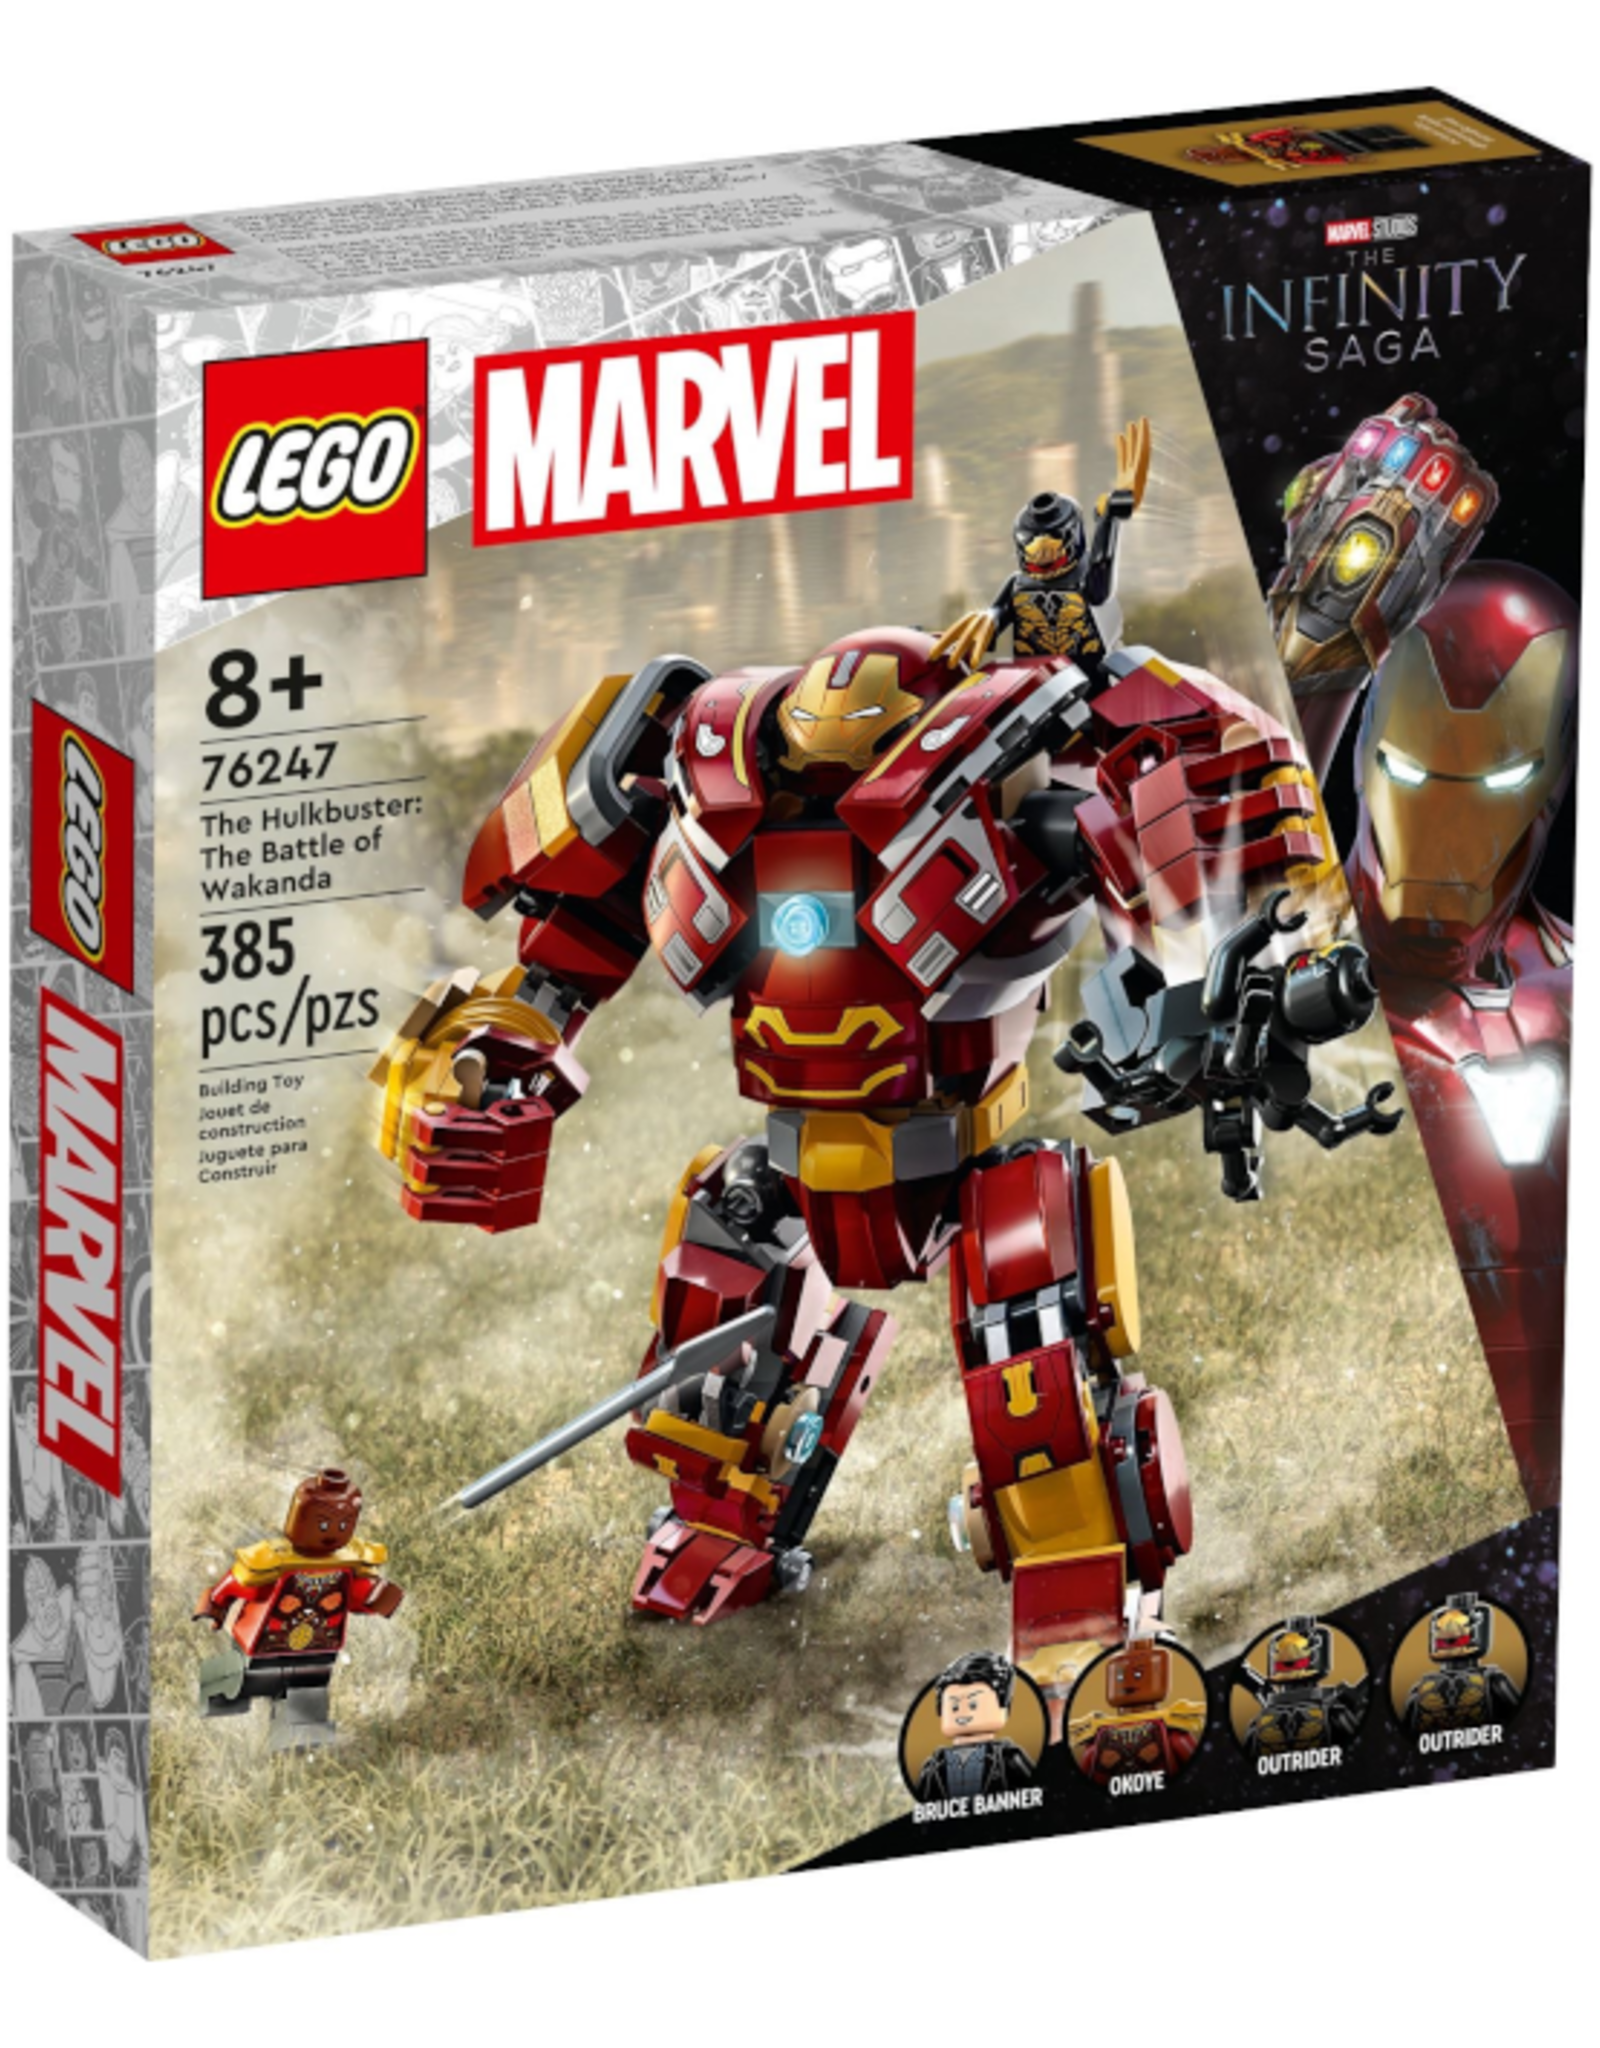 Lego Lego - Marvel - 76247 - The Hulkbuster: The Battle of Wakanda